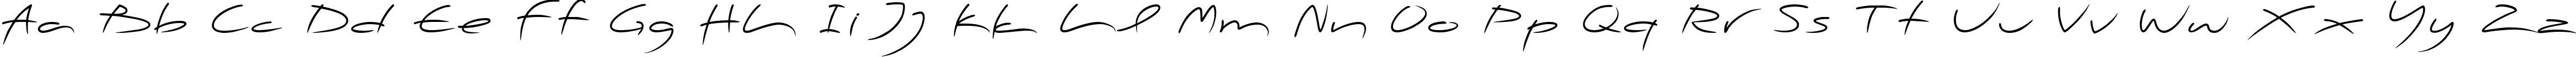 Пример написания английского алфавита шрифтом PFScandalPro-Display